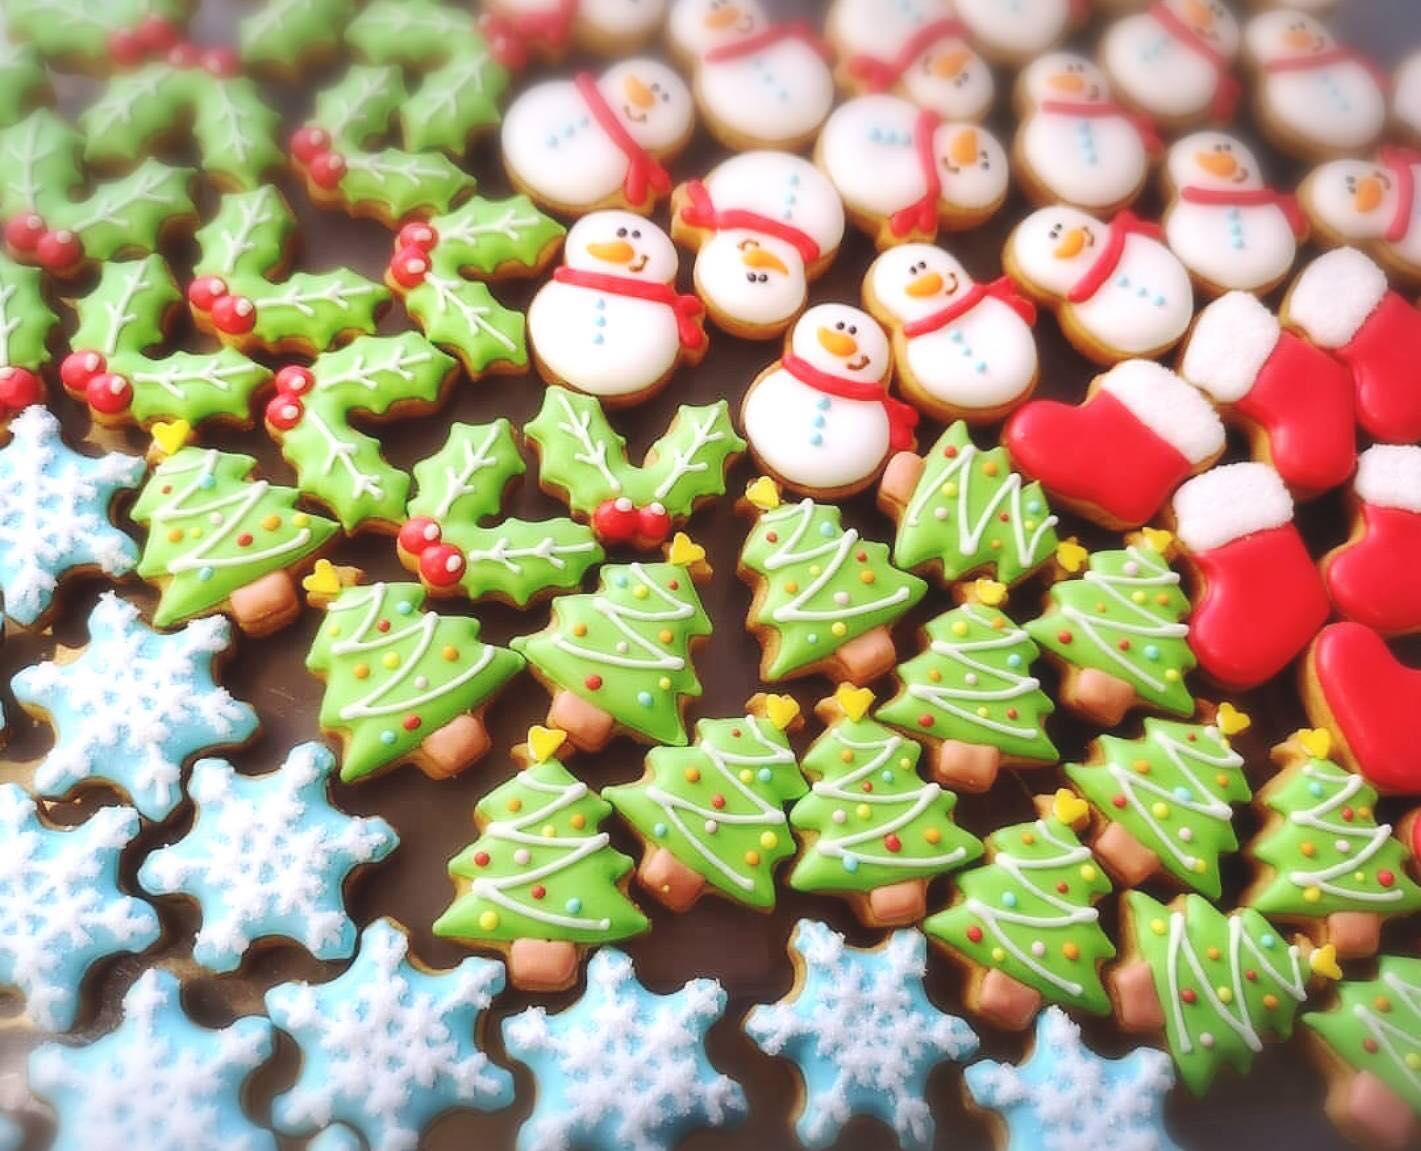 11月30日 土 開催 クリスマスイメージの可愛いクッキーをgetしよう 最新情報 未就学児ママのための情報サイト Mamasky ママスキー